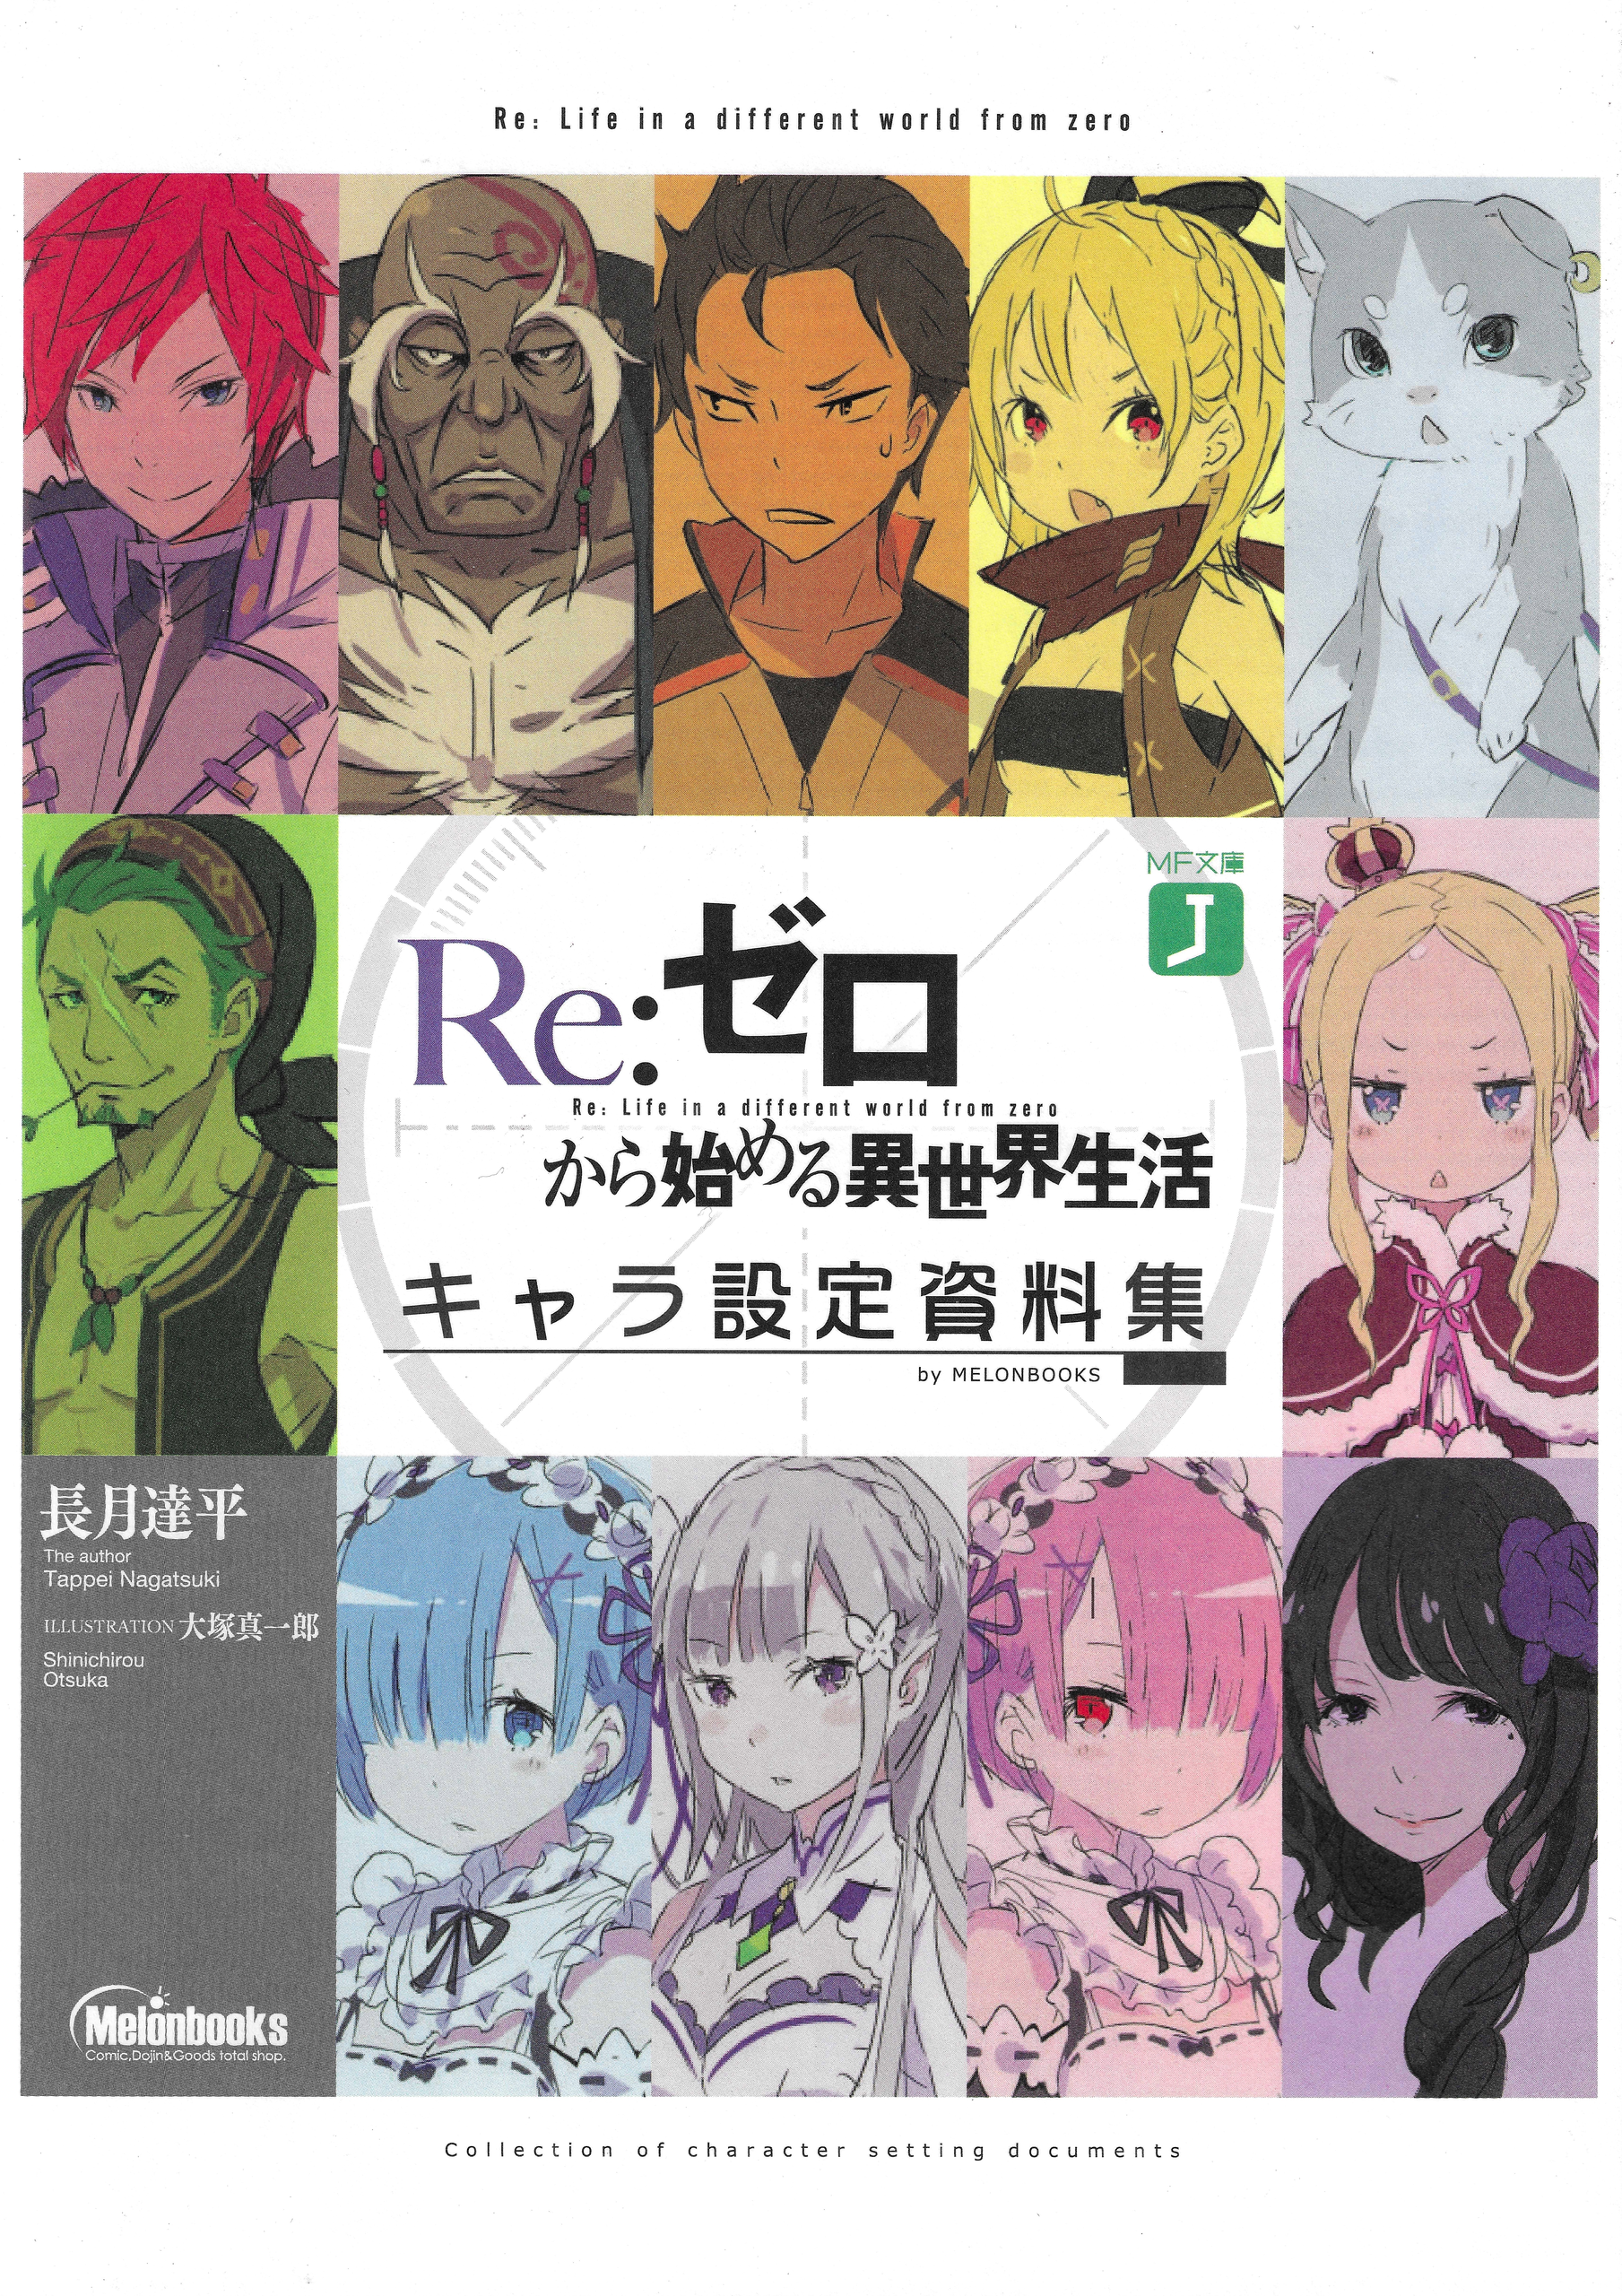 Lista de personagens de Re:Zero – Wikipédia, a enciclopédia livre